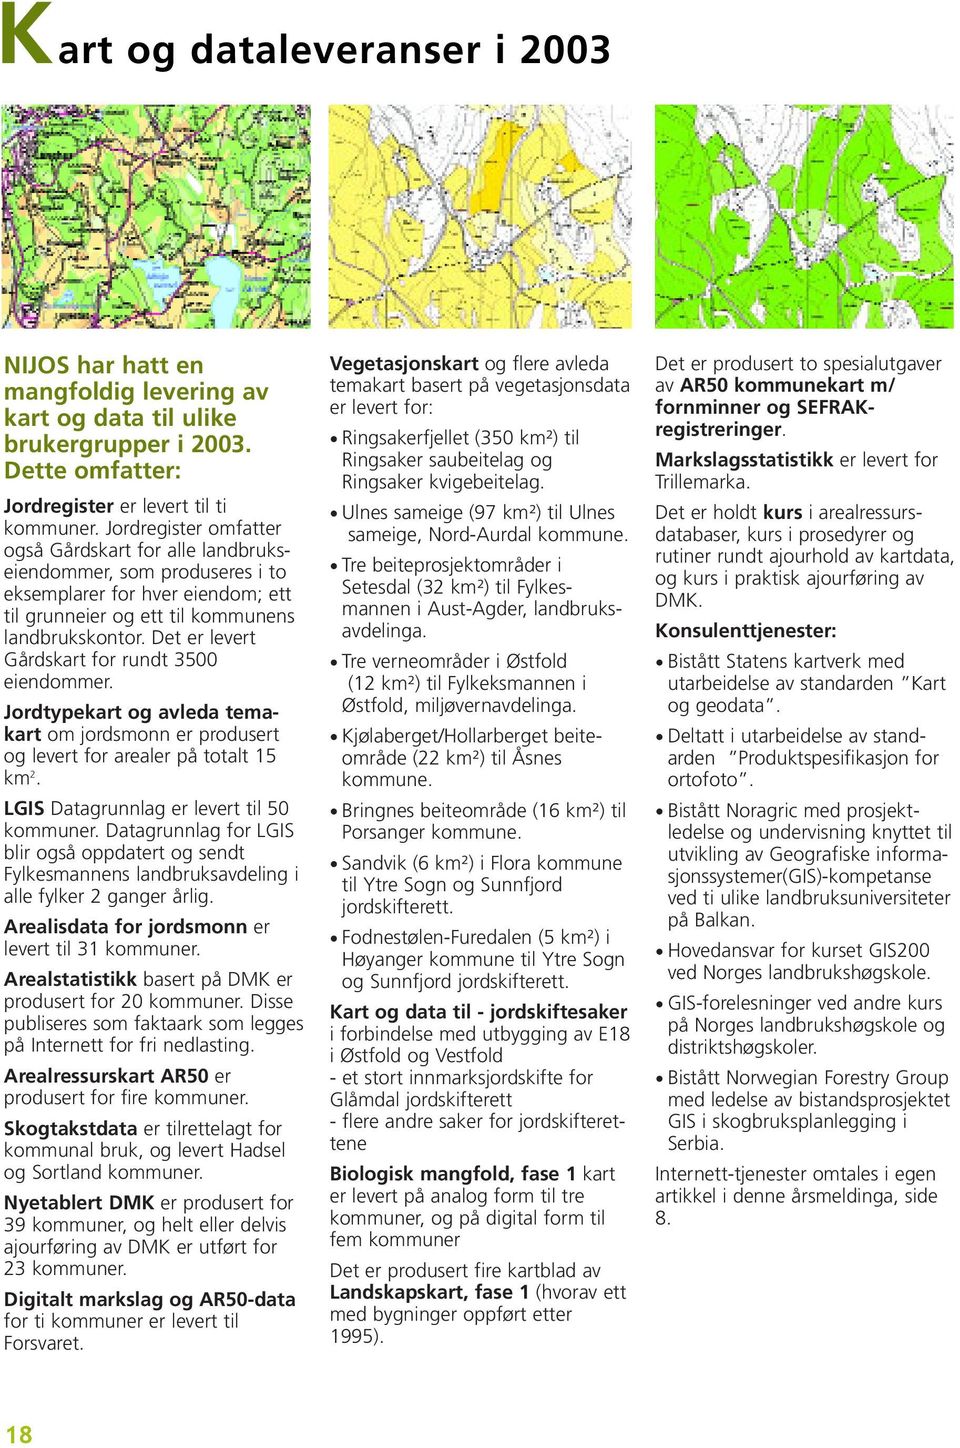 Det er levert Gårdskart for rundt 3500 eiendommer. Jordtypekart og avleda temakart om jordsmonn er produsert og levert for arealer på totalt 15 km 2. LGIS Datagrunnlag er levert til 50 kommuner.